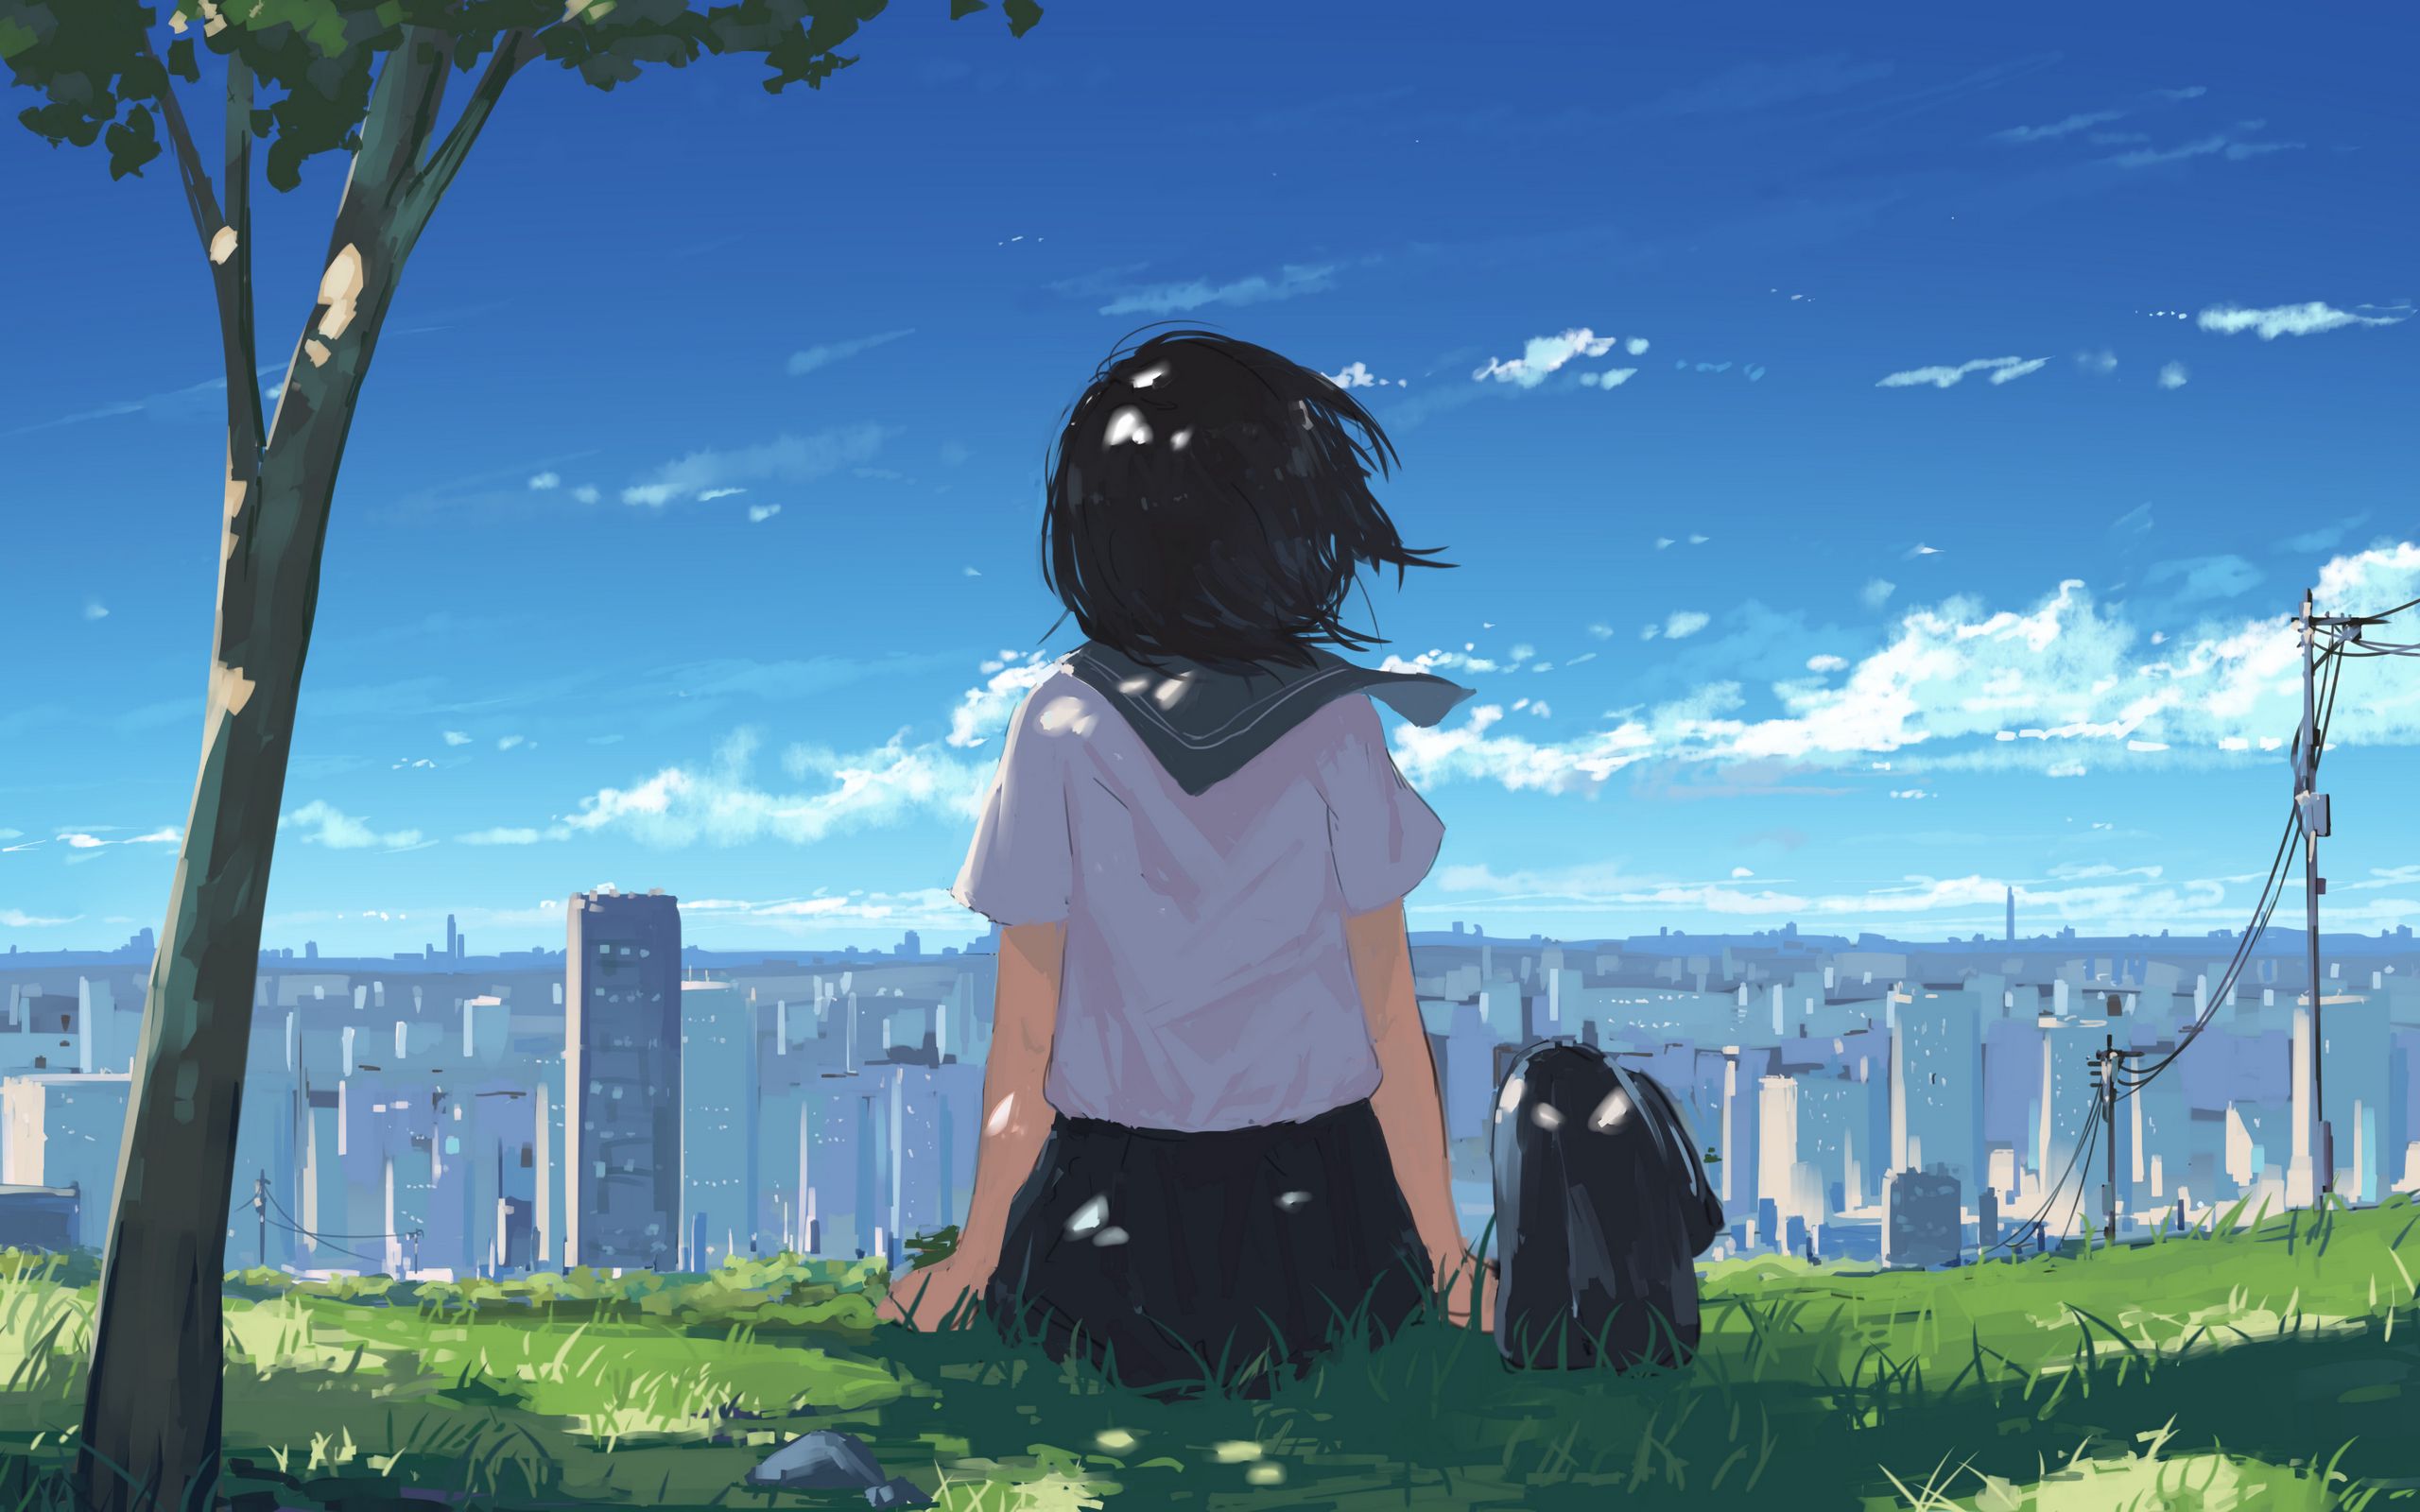 Download wallpaper 2560x1600 girl, grass, city, anime, art, cartoon  widescreen 16:10 hd background